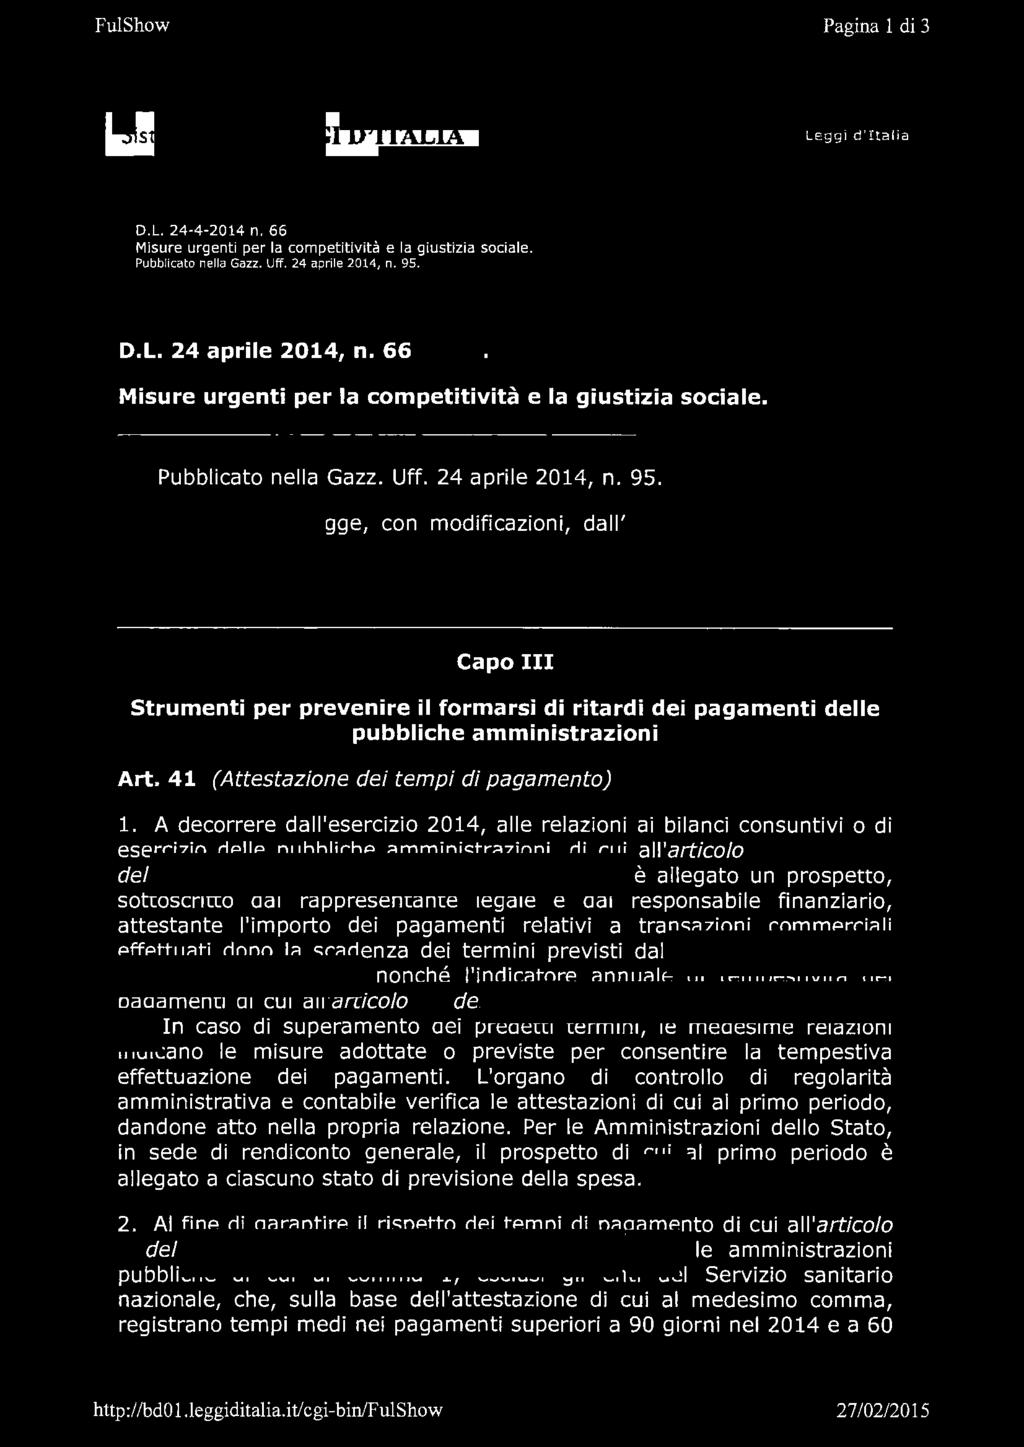 FulShow Pagina 1di 3 Sistema ftleggi D'ITALIA Leggi d'italia D.L. 24-4-2014 n. 66 Misure urgenti per la competitività e la giustizia sociale. Pubblicato nella Gazz. Uff. 24 aprile 2014, n.